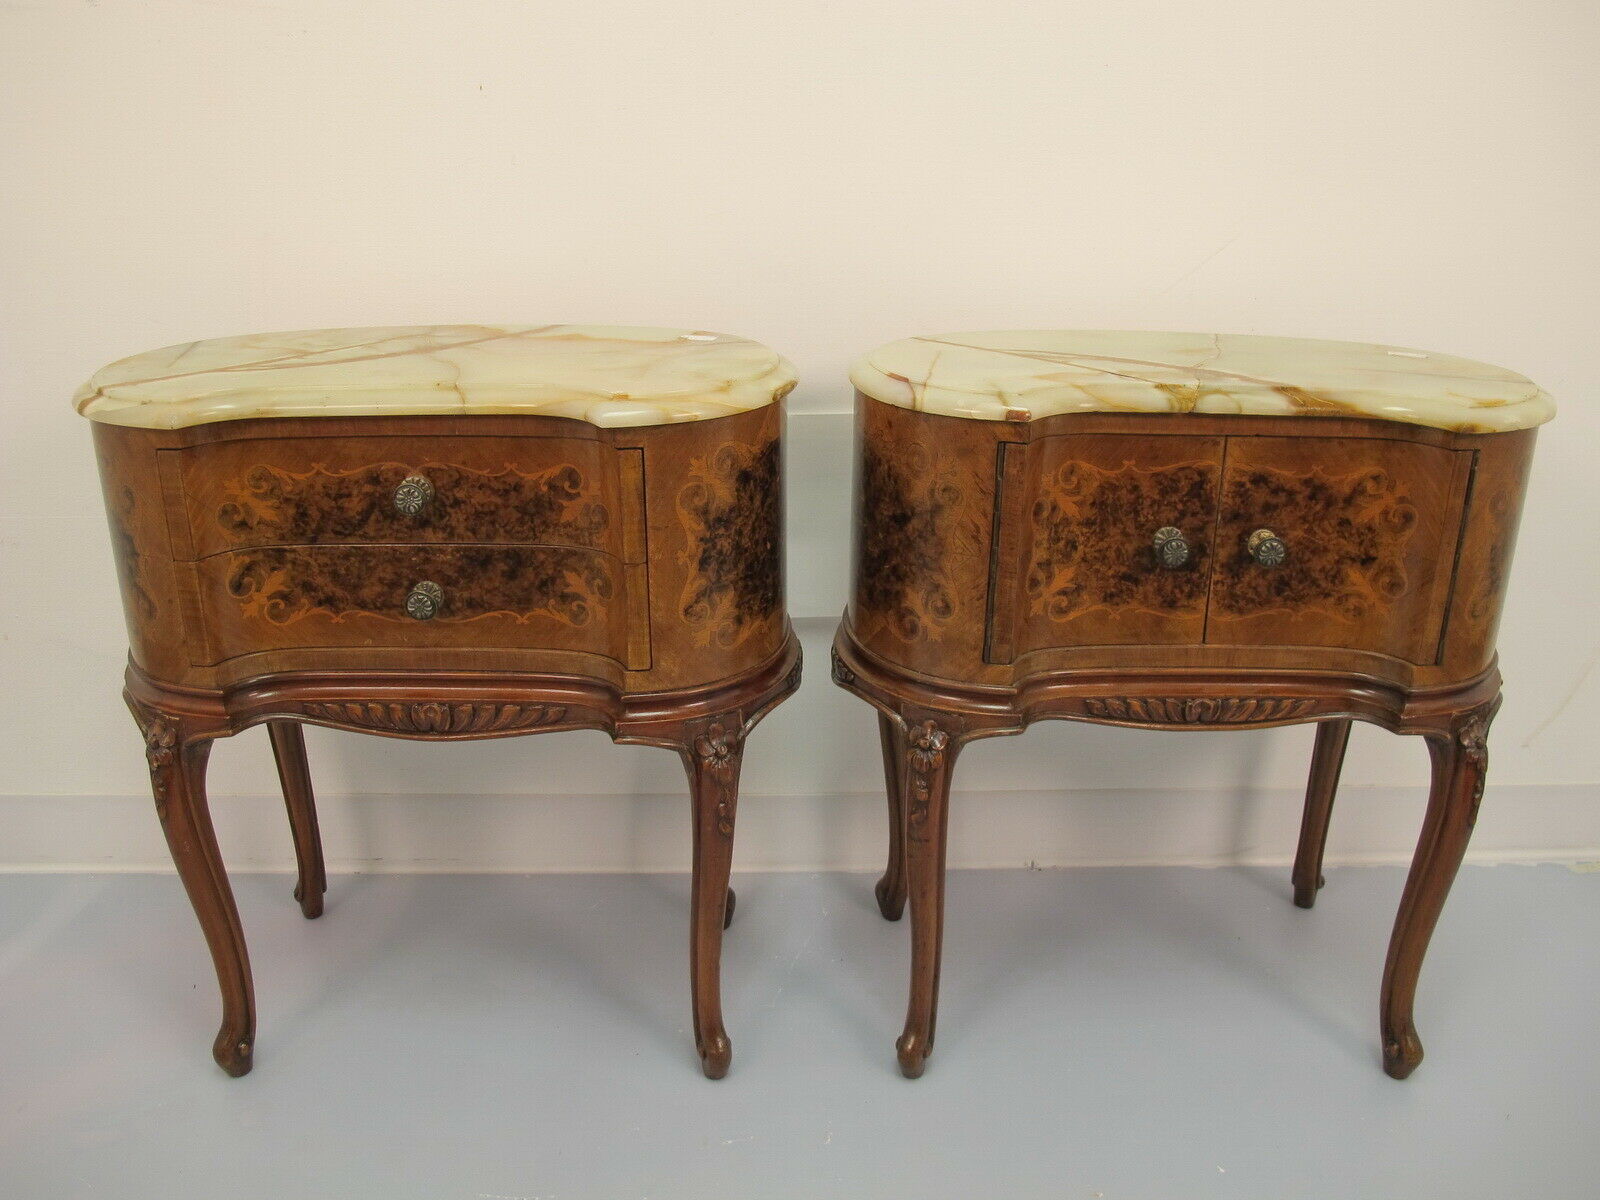 Tables de chevets : Top 5 des modèles antiques les plus chers retrouvés sur eBay !